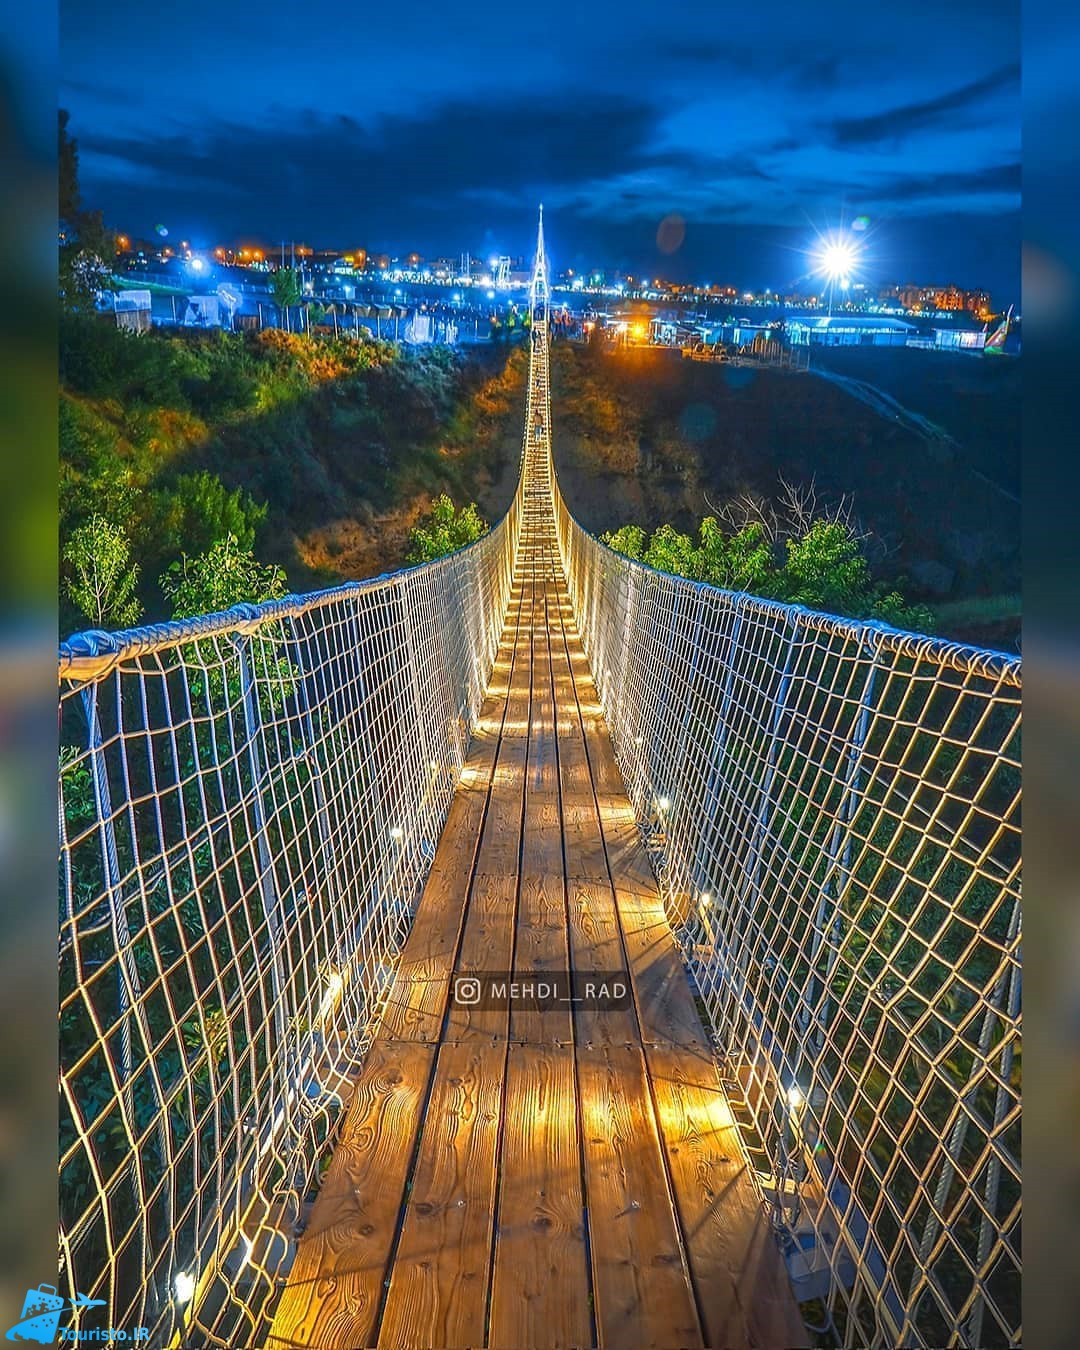 پل معلق مشگین شهر نمای زیبا در شب